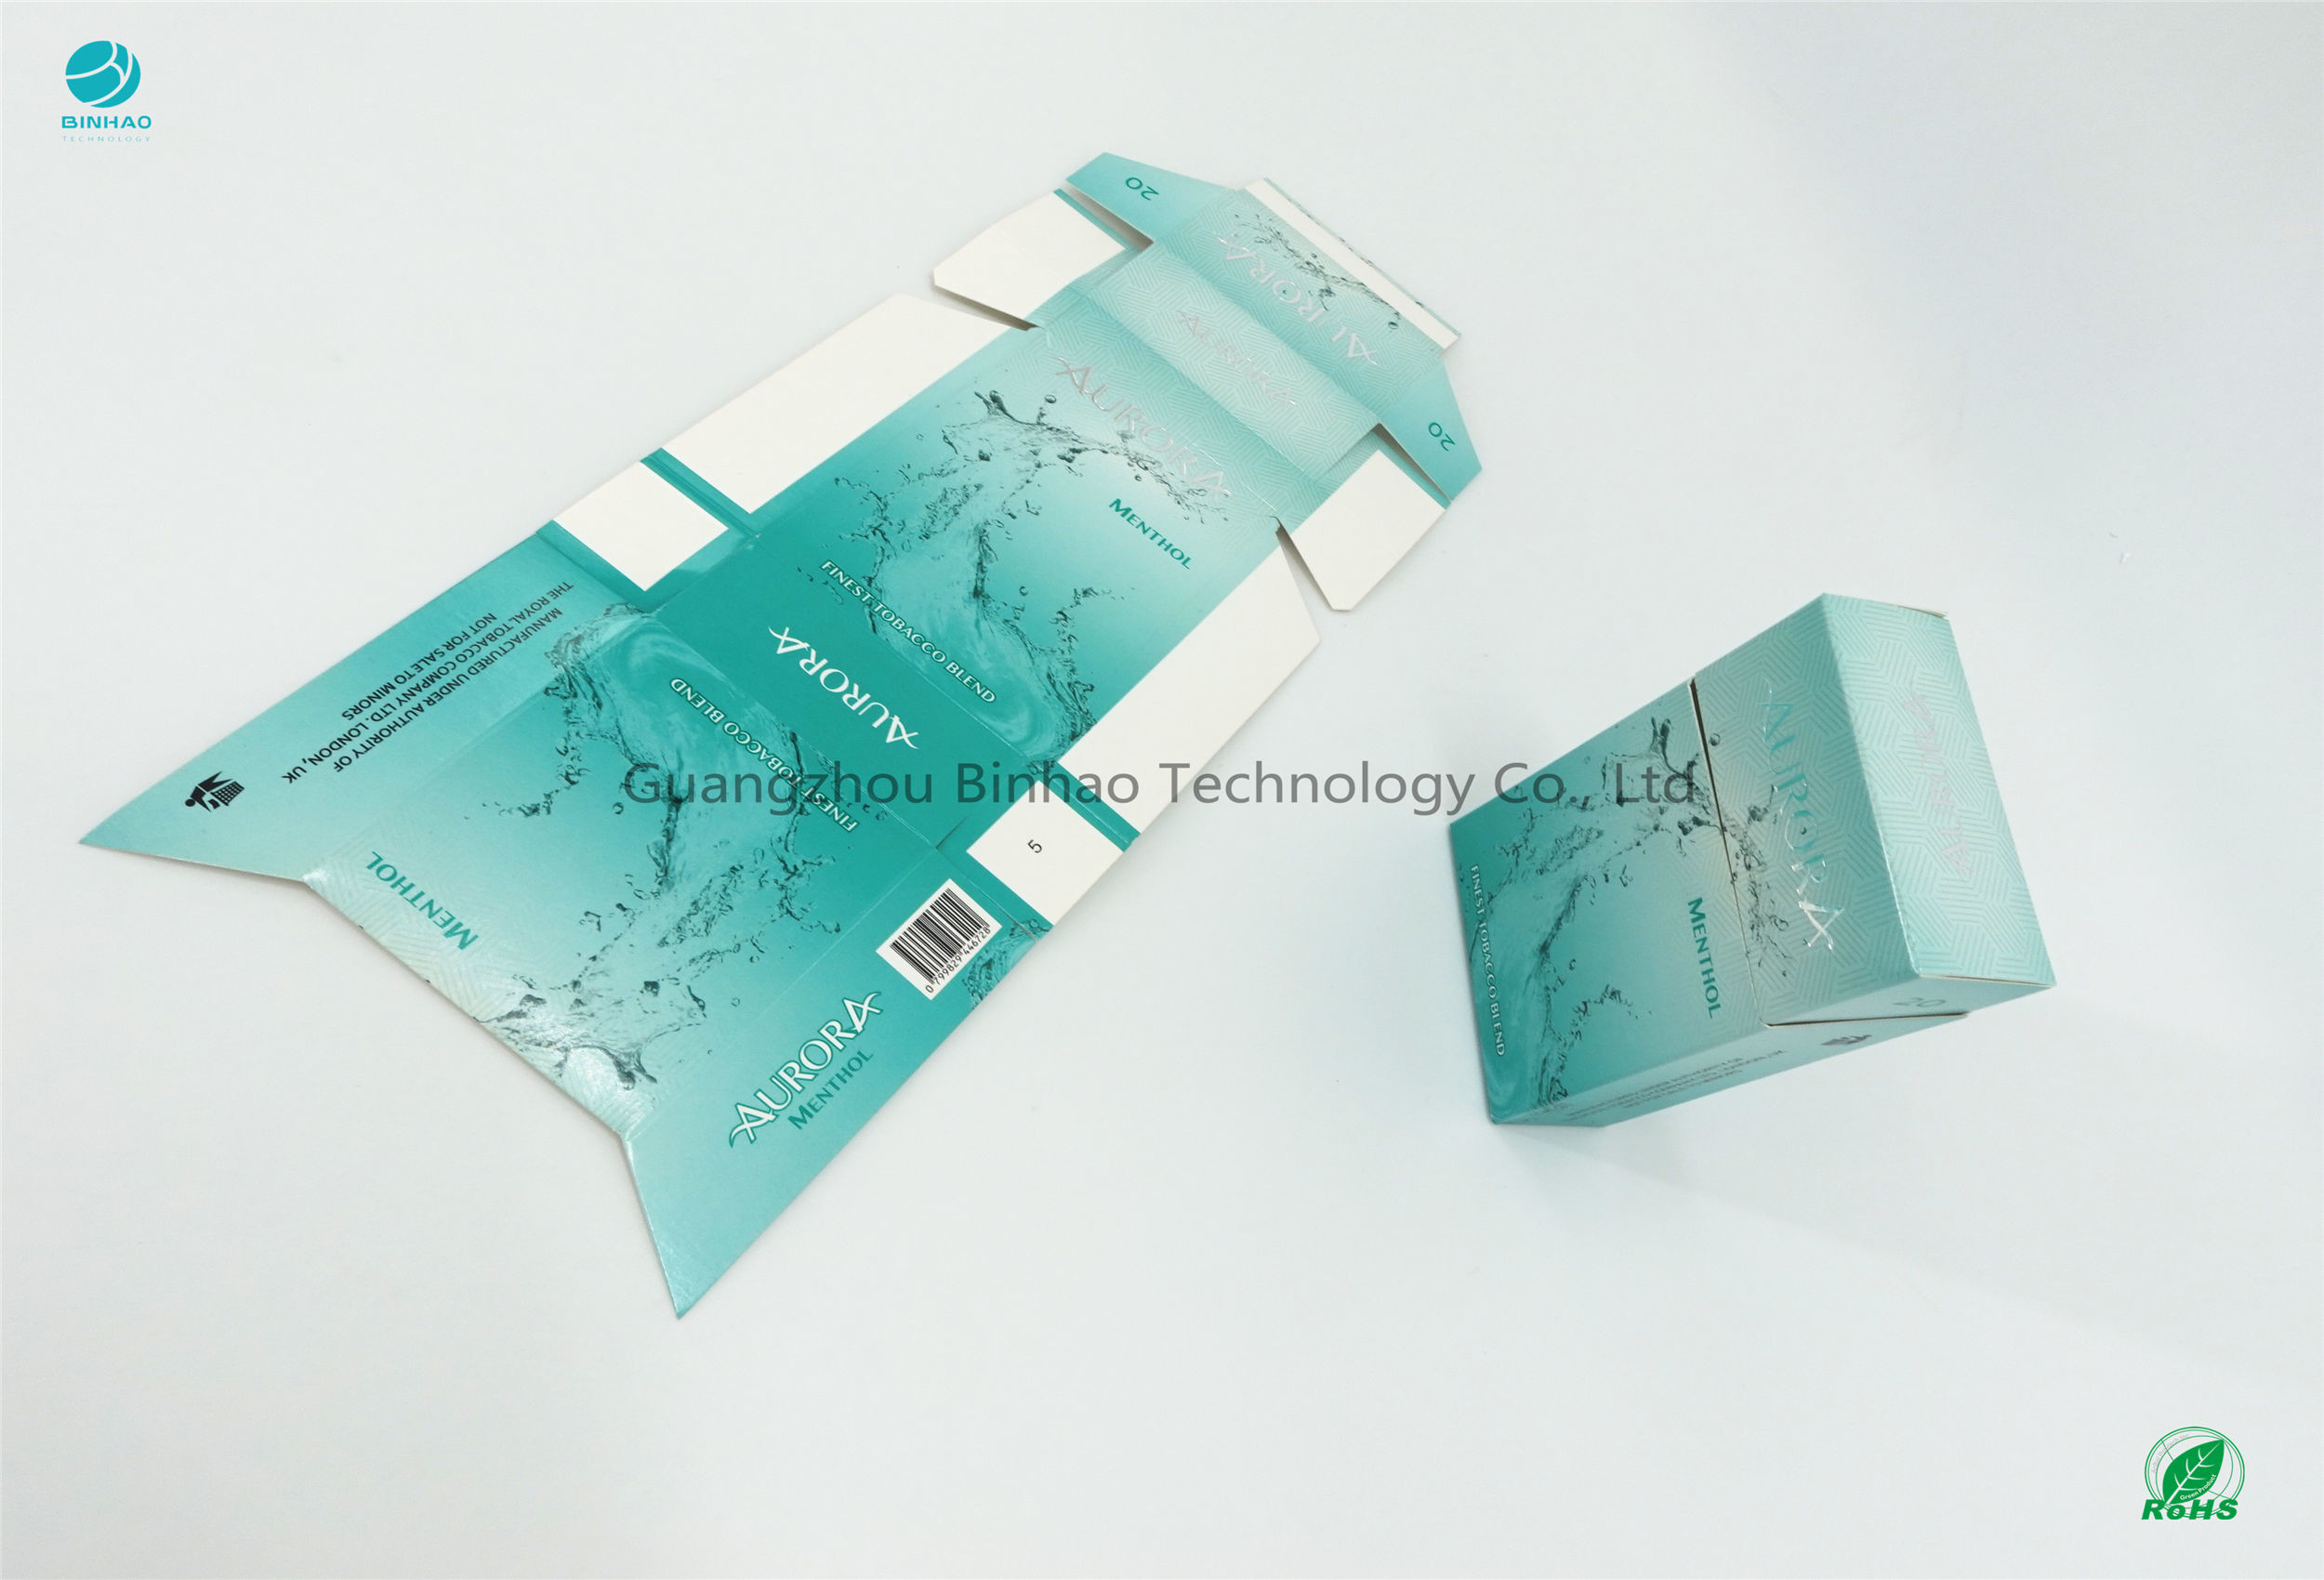 กระดาษแข็งบุหรี่กรณีพื้นผิวการรักษา UV ชนิดกระดาษ SBS